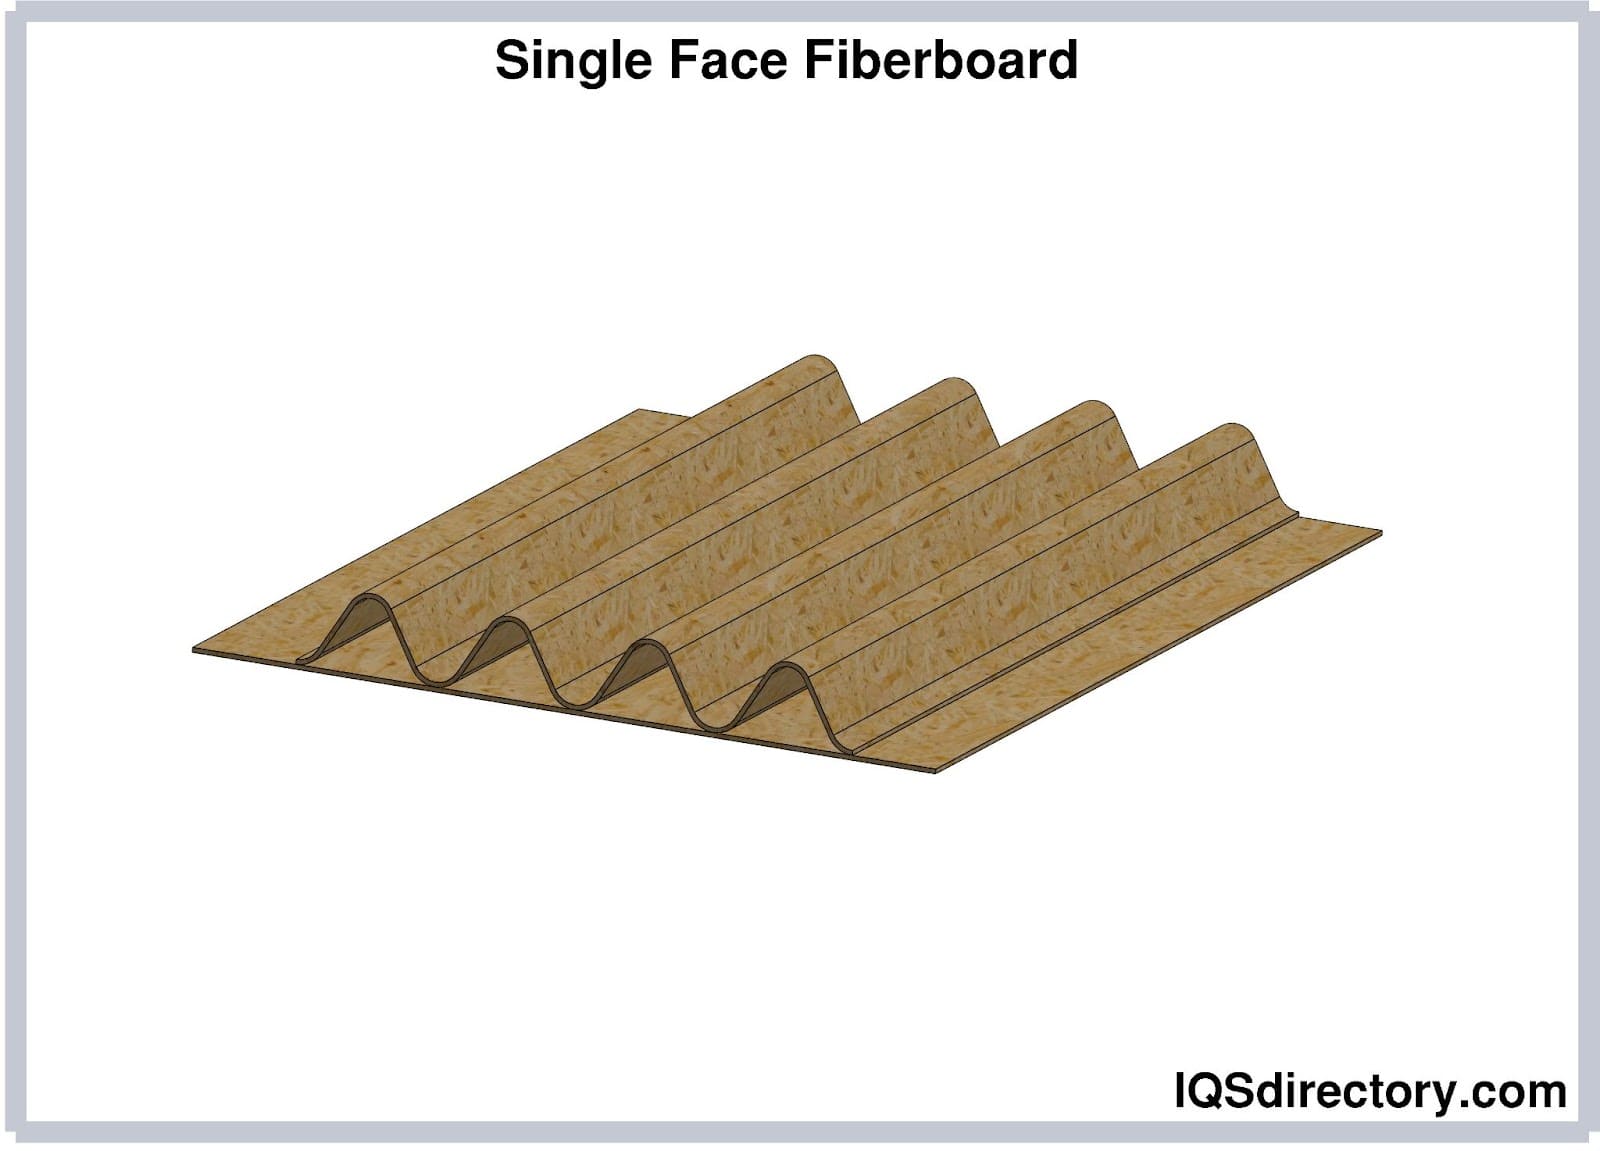 Single Face Fiberboard